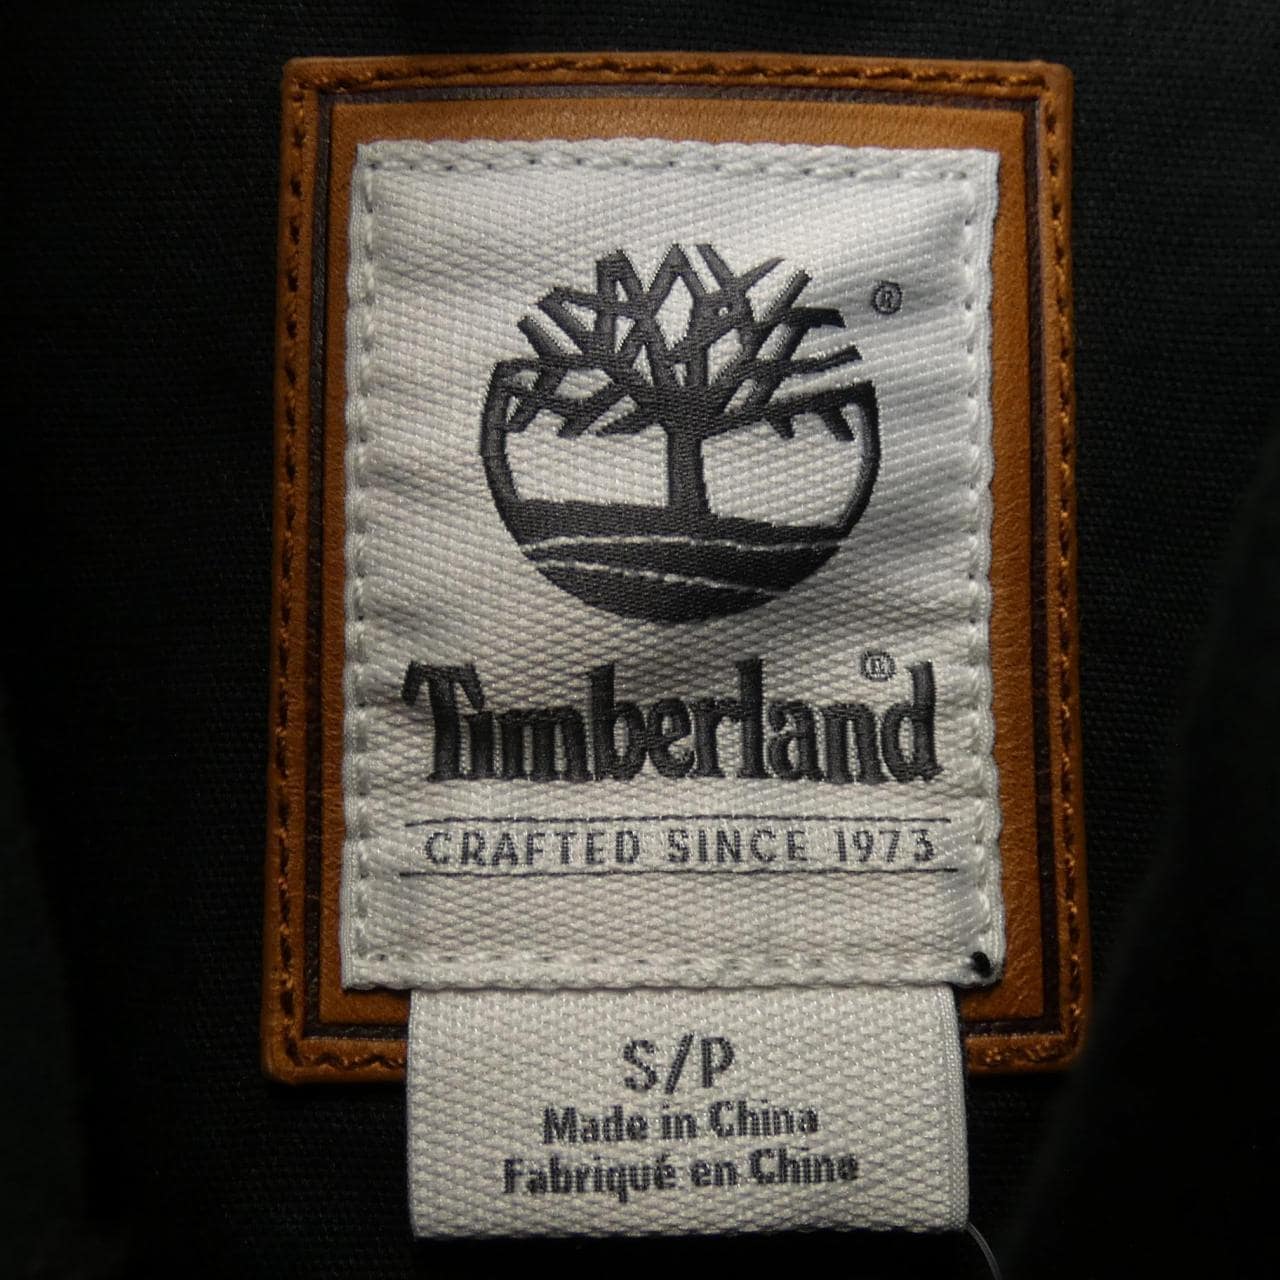 Timberland TIMBERLAND夾克衫